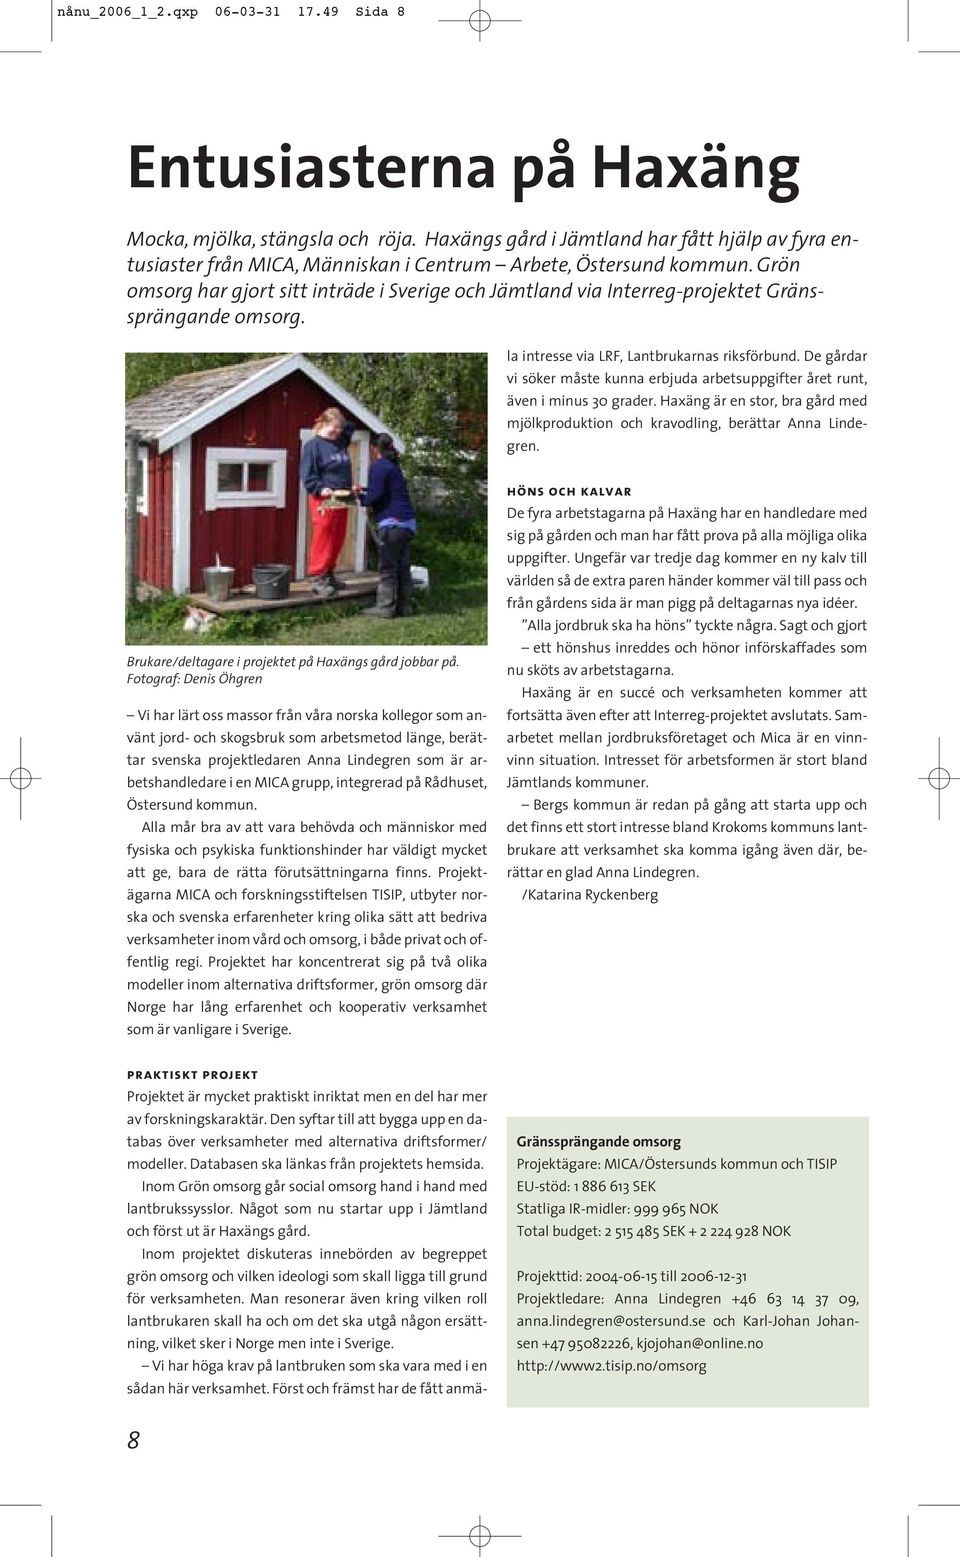 Grön omsorg har gjort sitt inträde i Sverige och Jämtland via Interreg-projektet Gränssprängande omsorg.